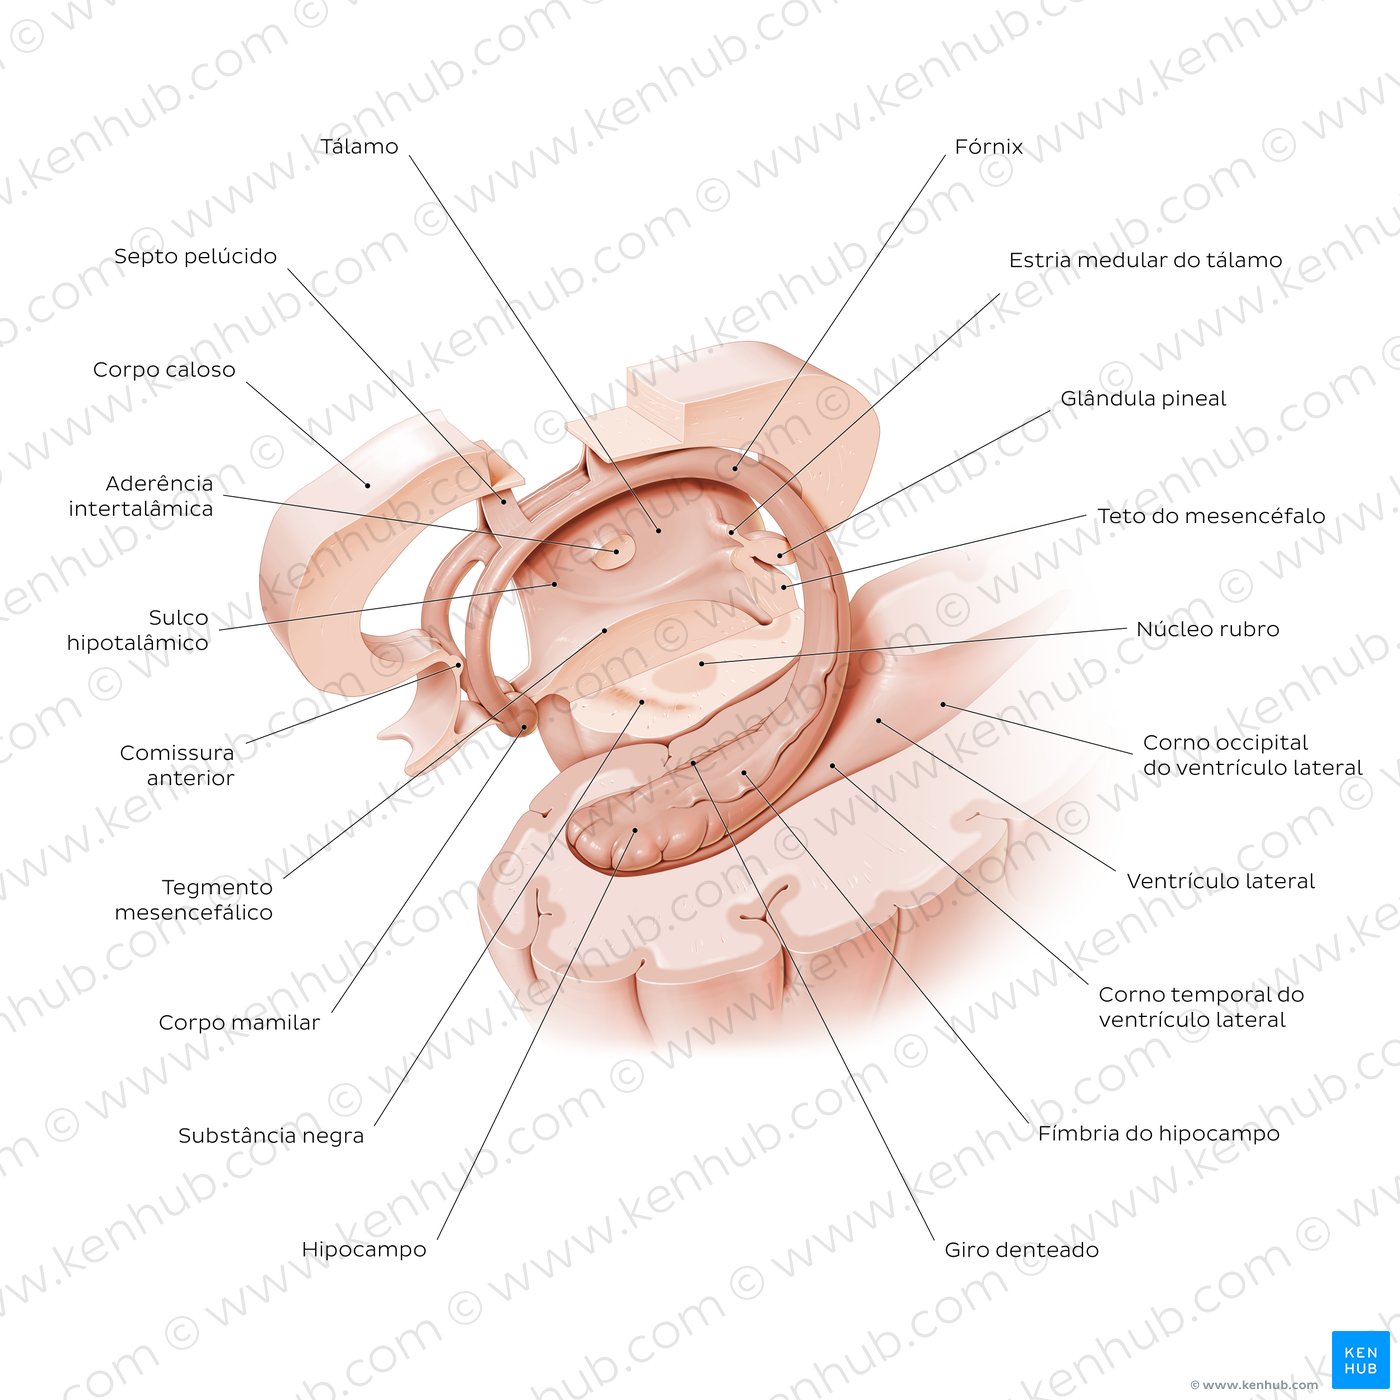 Hipocampo e fórnix - Visão geral